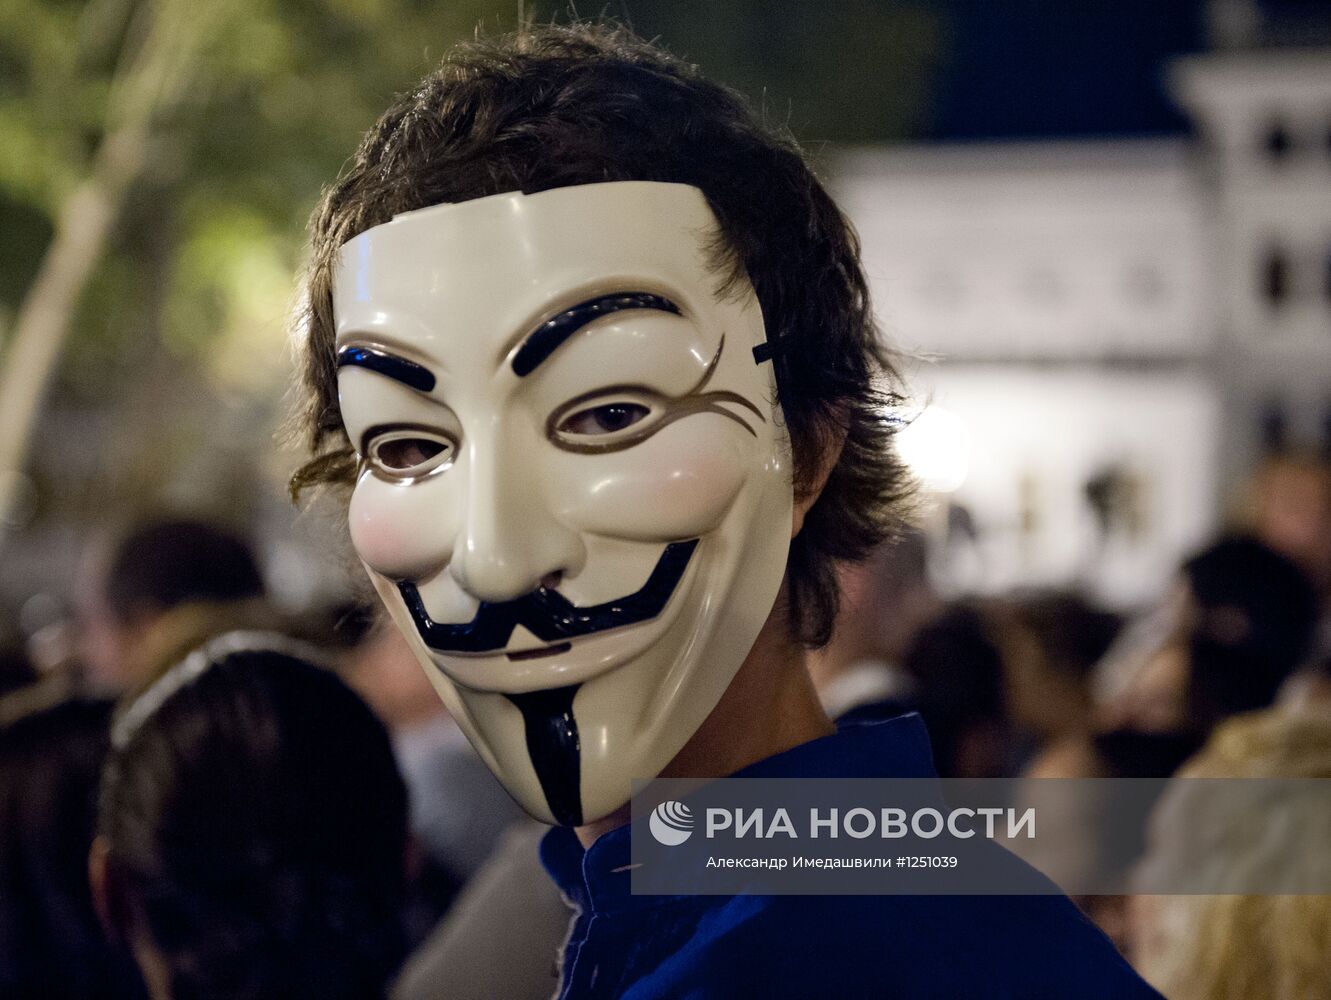 Сторонники блока "Грузинская мечта" на площади Свободы в Тбилиси